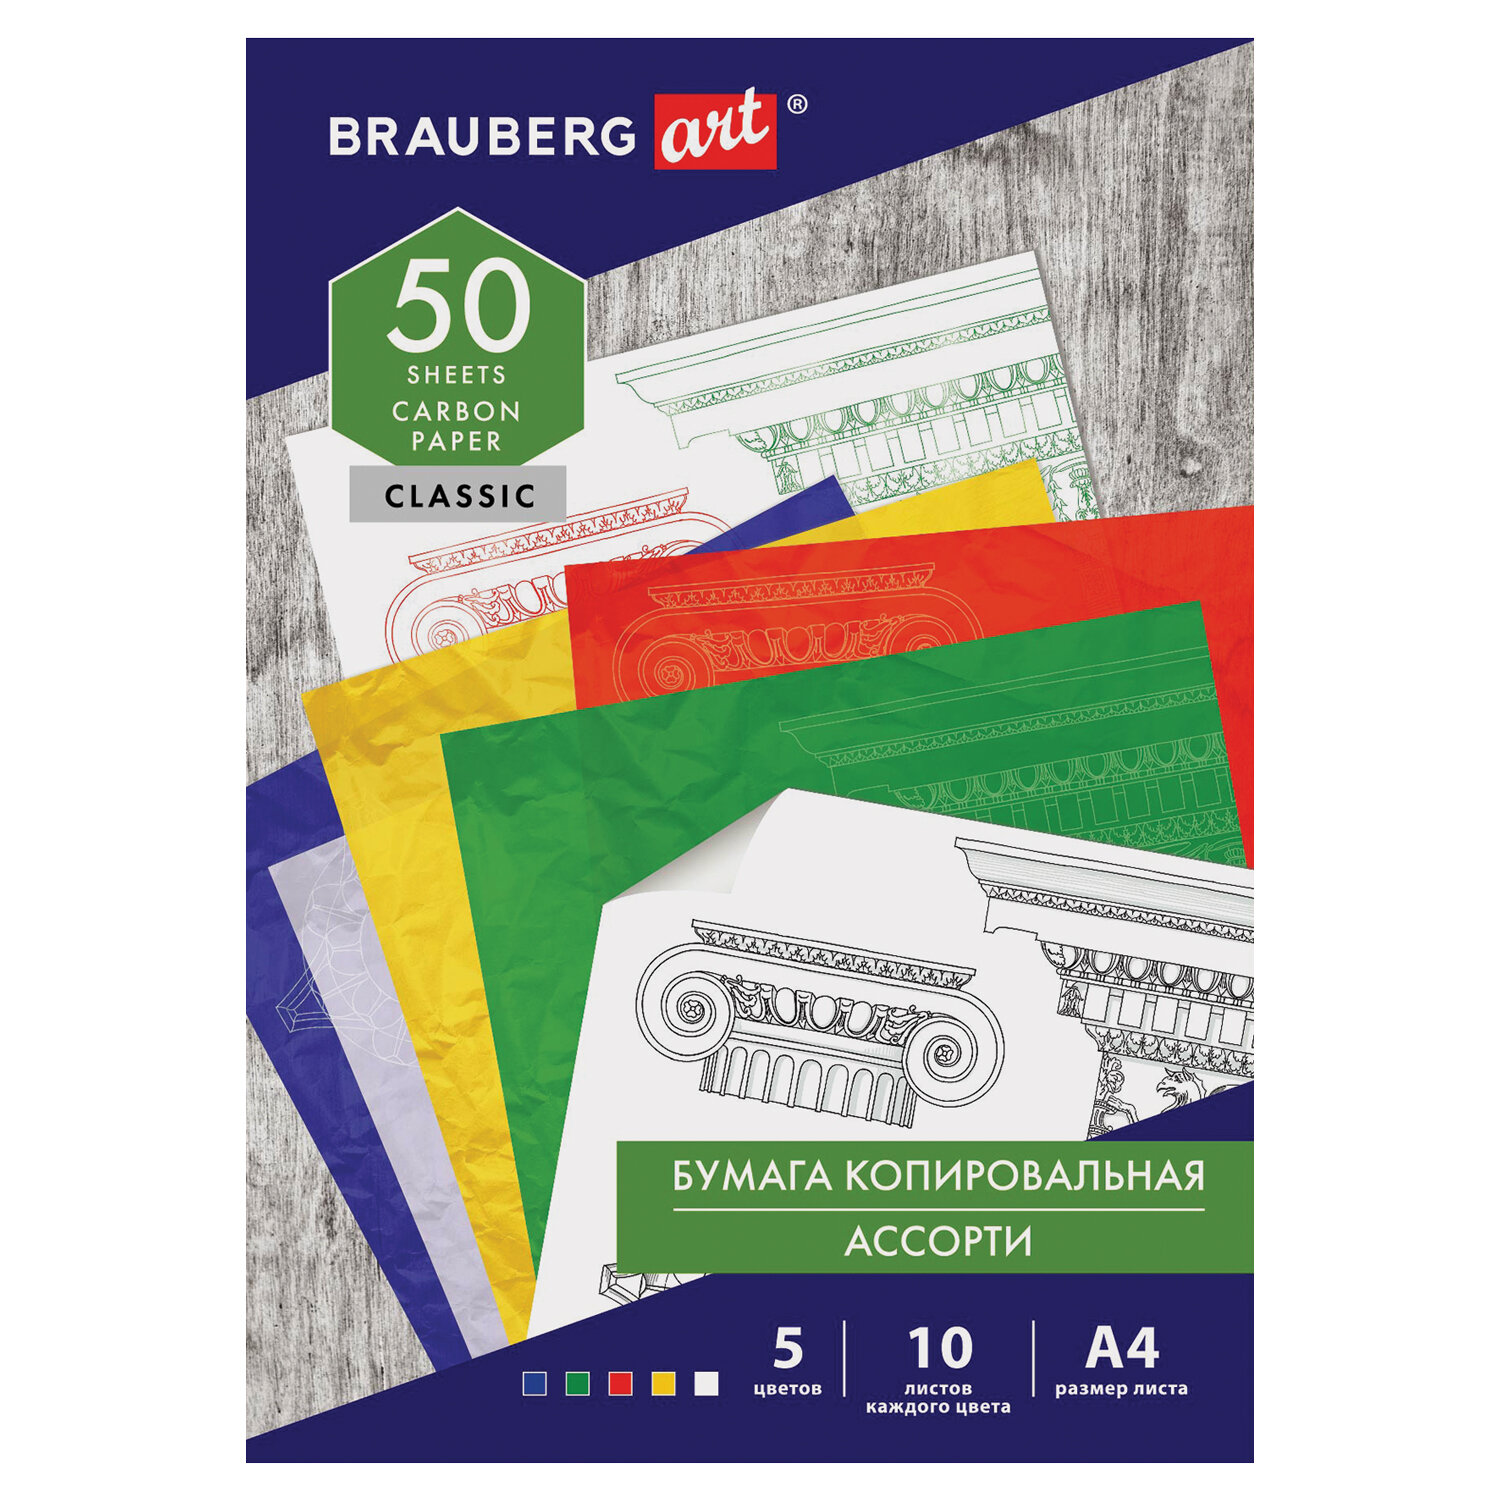 Бумага копировальная (копирка) 5 цветов х 10 листов (синяя белая красная желтая зеленая), BRAUBERG A